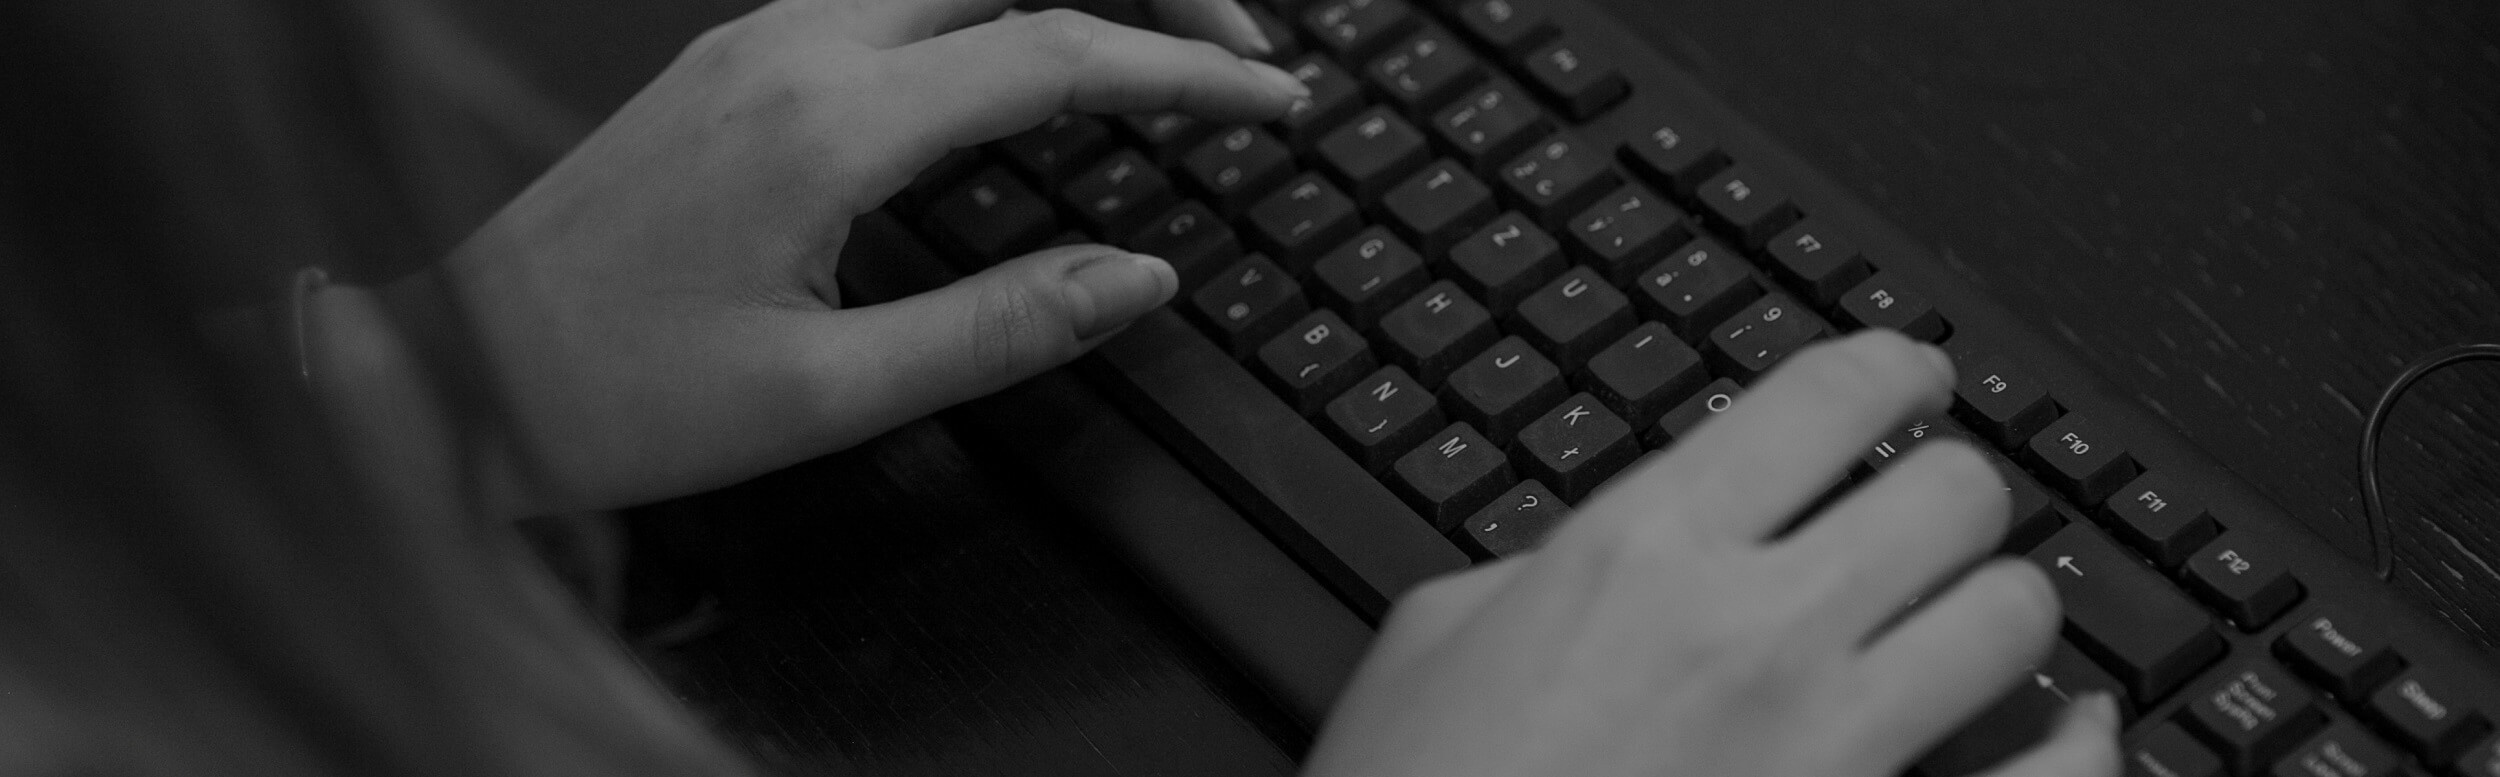 Žena píše na klávesnici